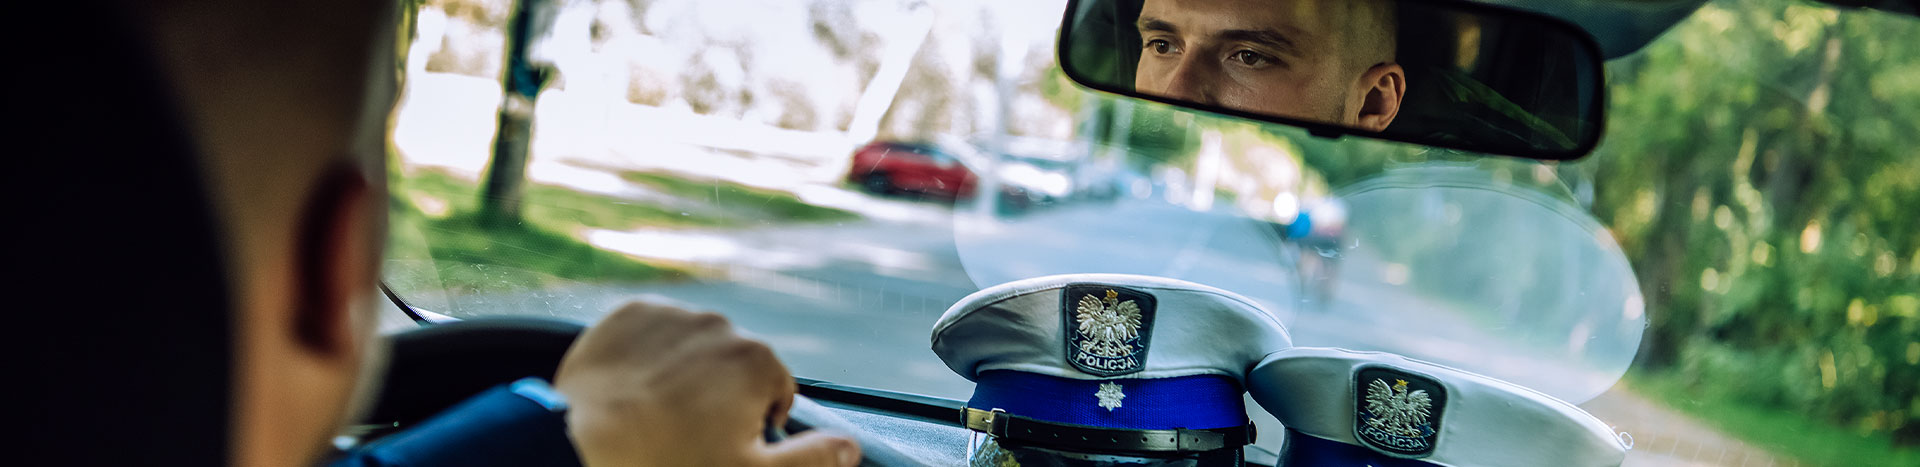 Fotografia jest wykonana z tylnego siedzenia radiowozu. Widać w nim lusterko, w którym odbija się twarz prowadzącego samochód policjanta. Na tapicerce widoczne są policyjne czapki. Autorem zdjęcia jest Maciej Motylewski.